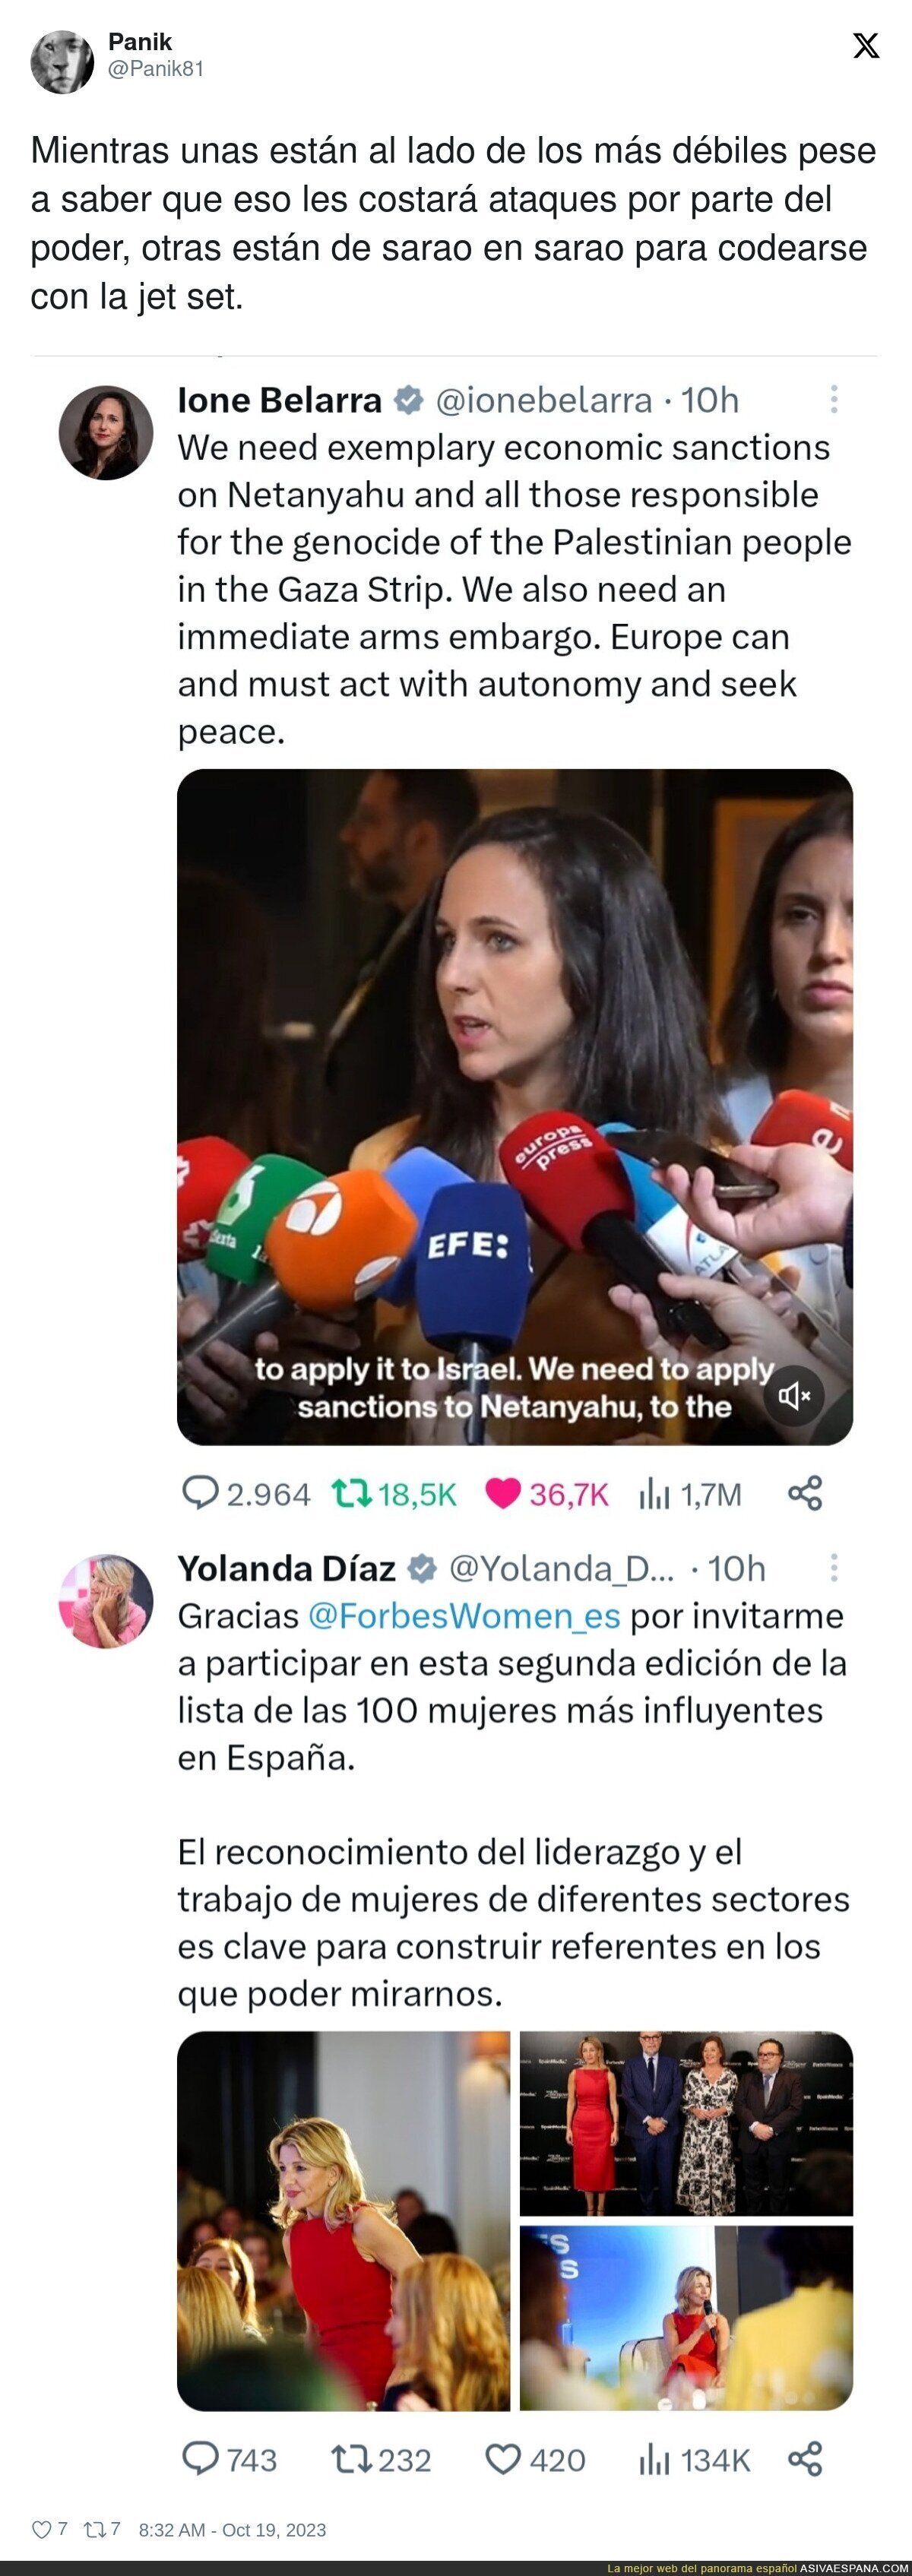 Grandes diferencias entre Ione Belarra y Yolanda Díaz